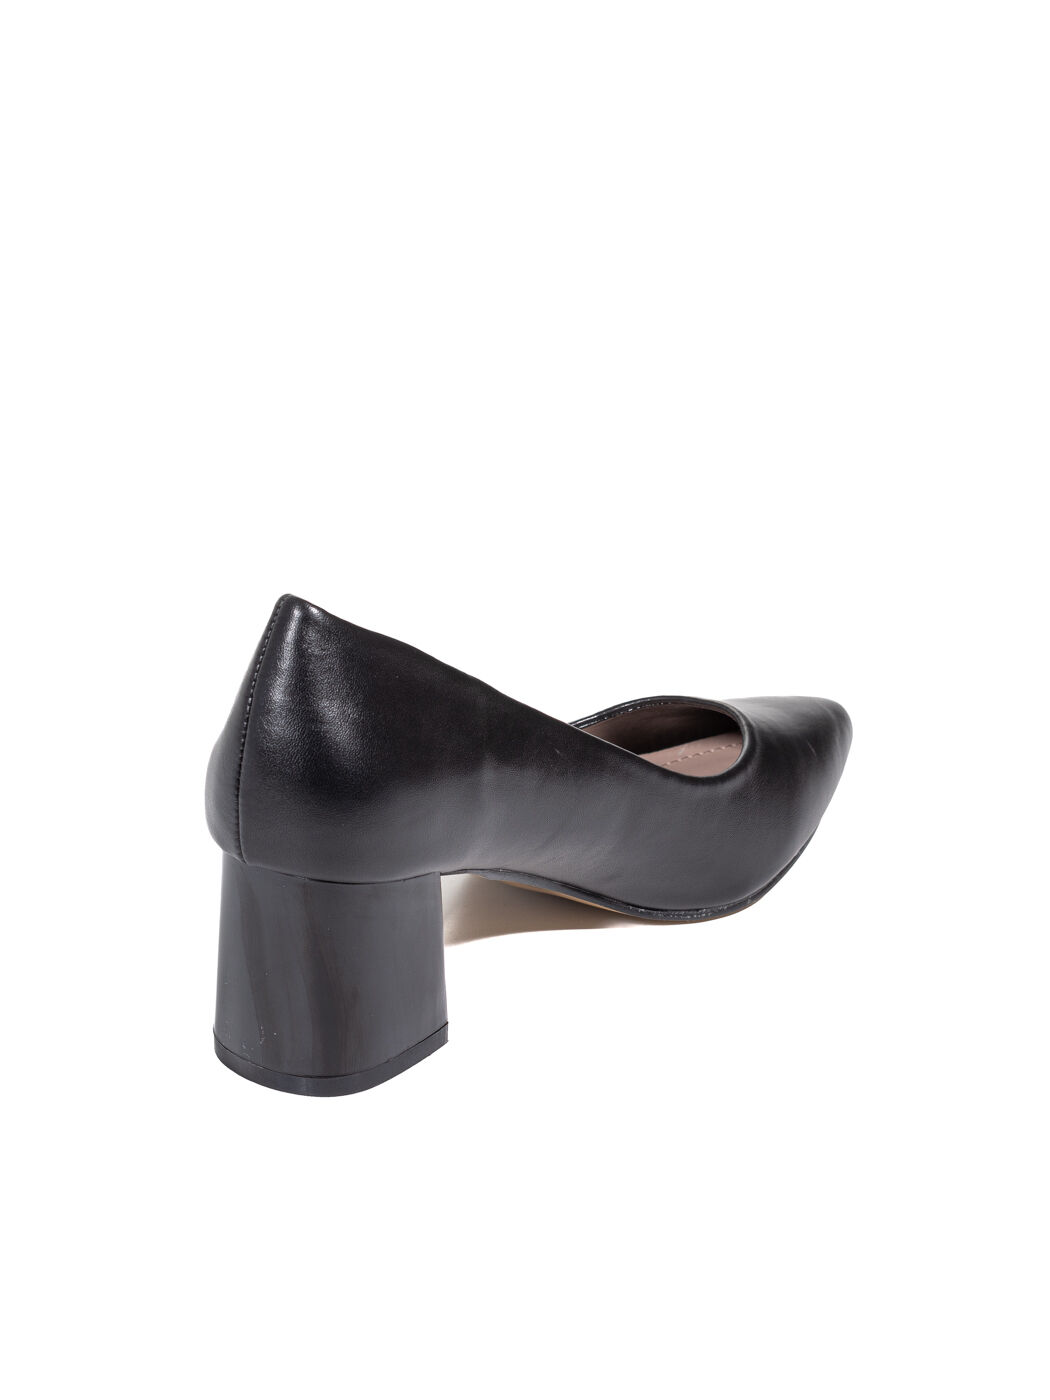 Туфли женские черные экокожа каблук устойчивый демисезон от производителя 7M вид 1